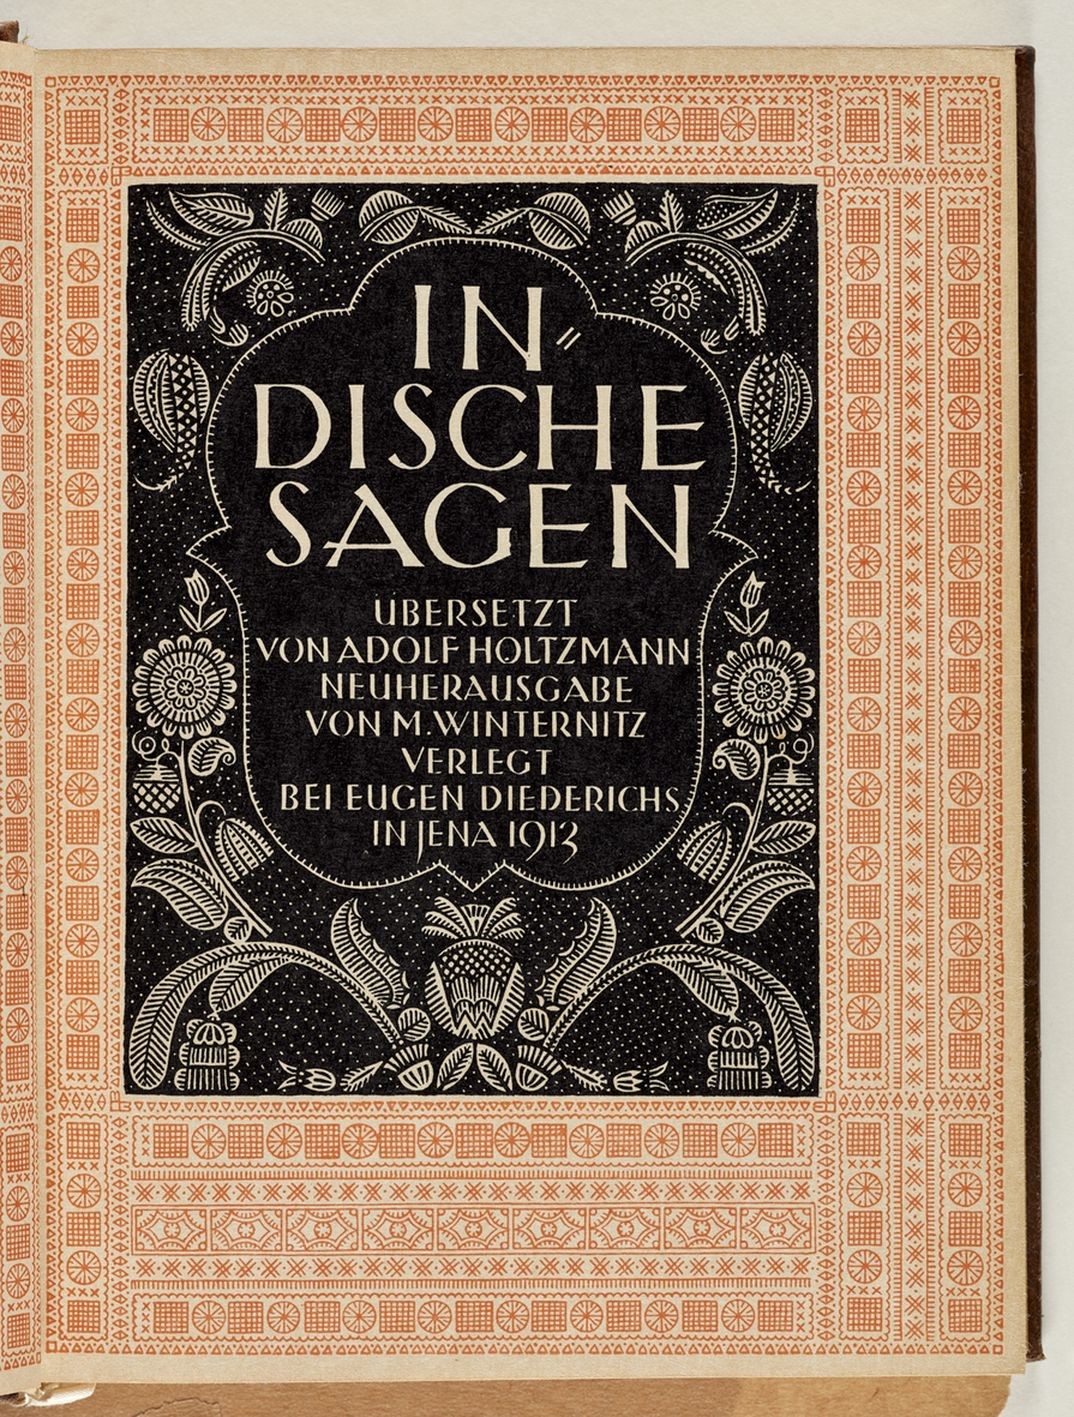 Buch "Indische Sagen" (Museum für Kunst und Kulturgeschichte der Stadt Dortmund CC BY-NC-SA)